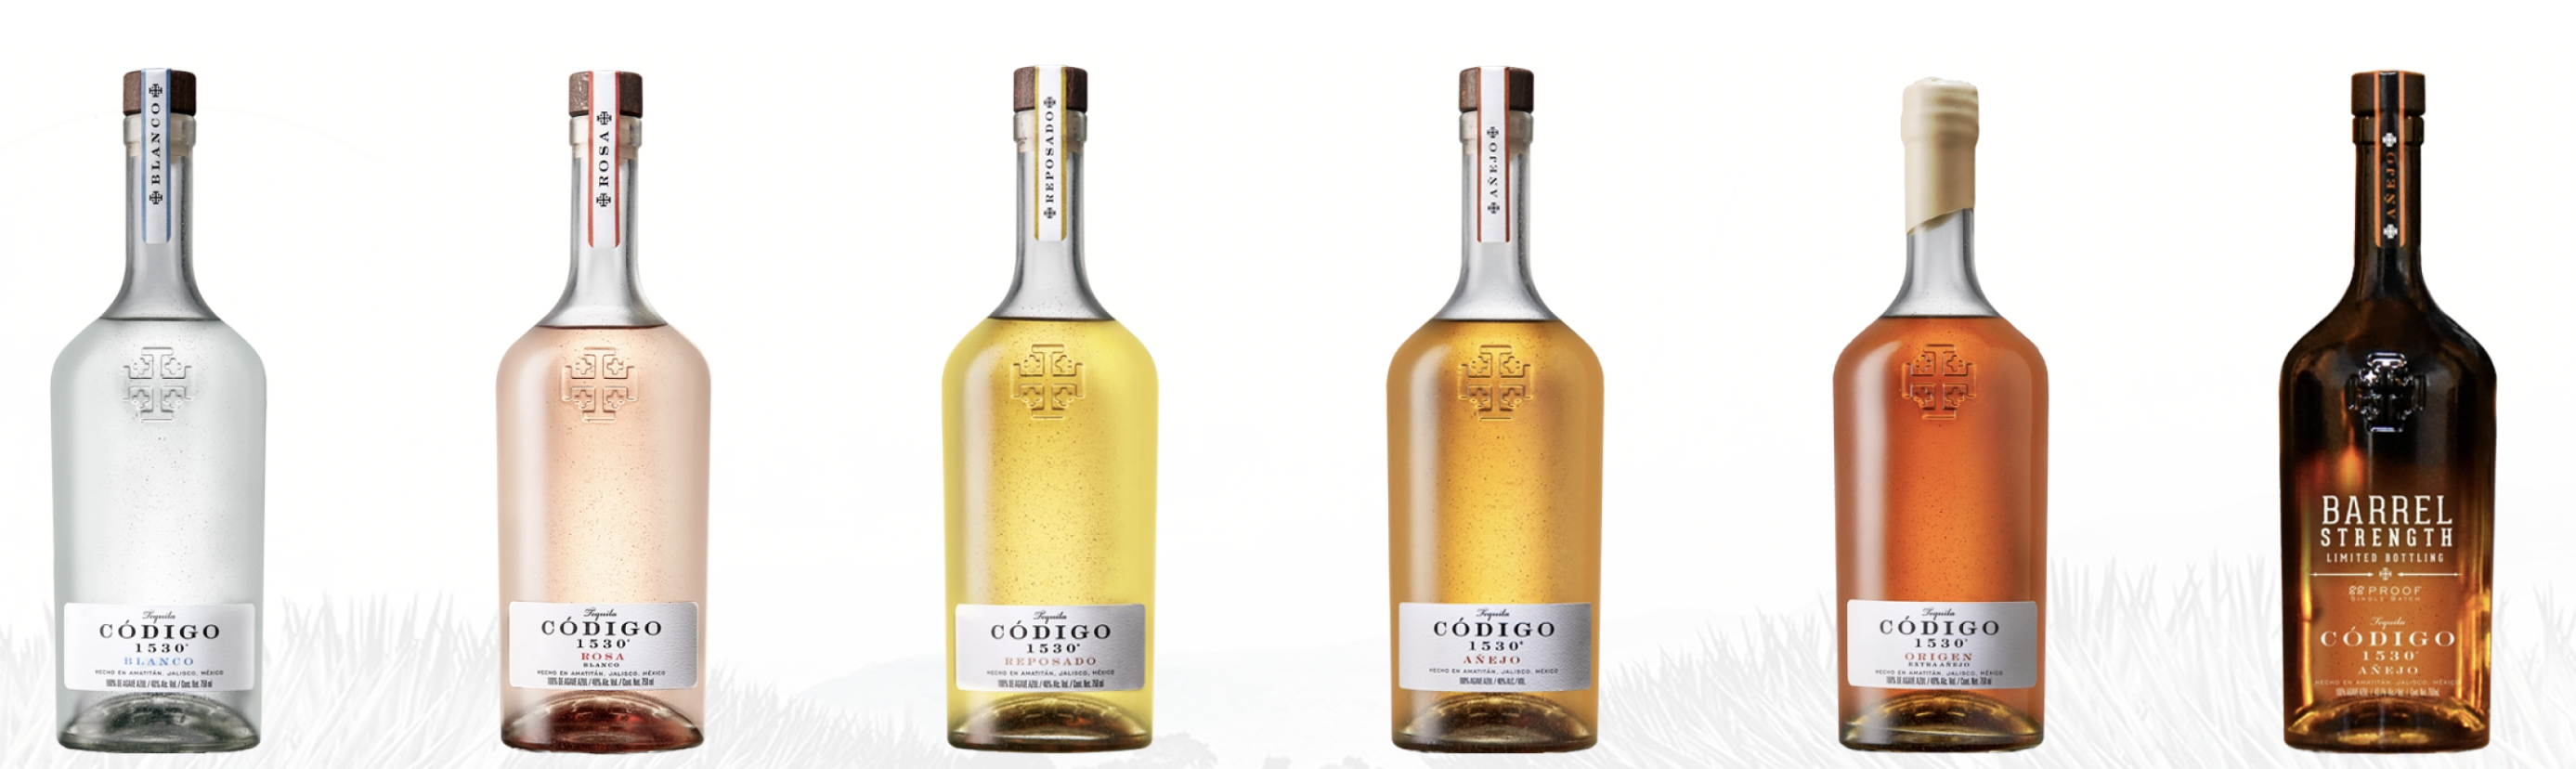 Codigo 1530 Blanco Tequila : The Whisky Exchange